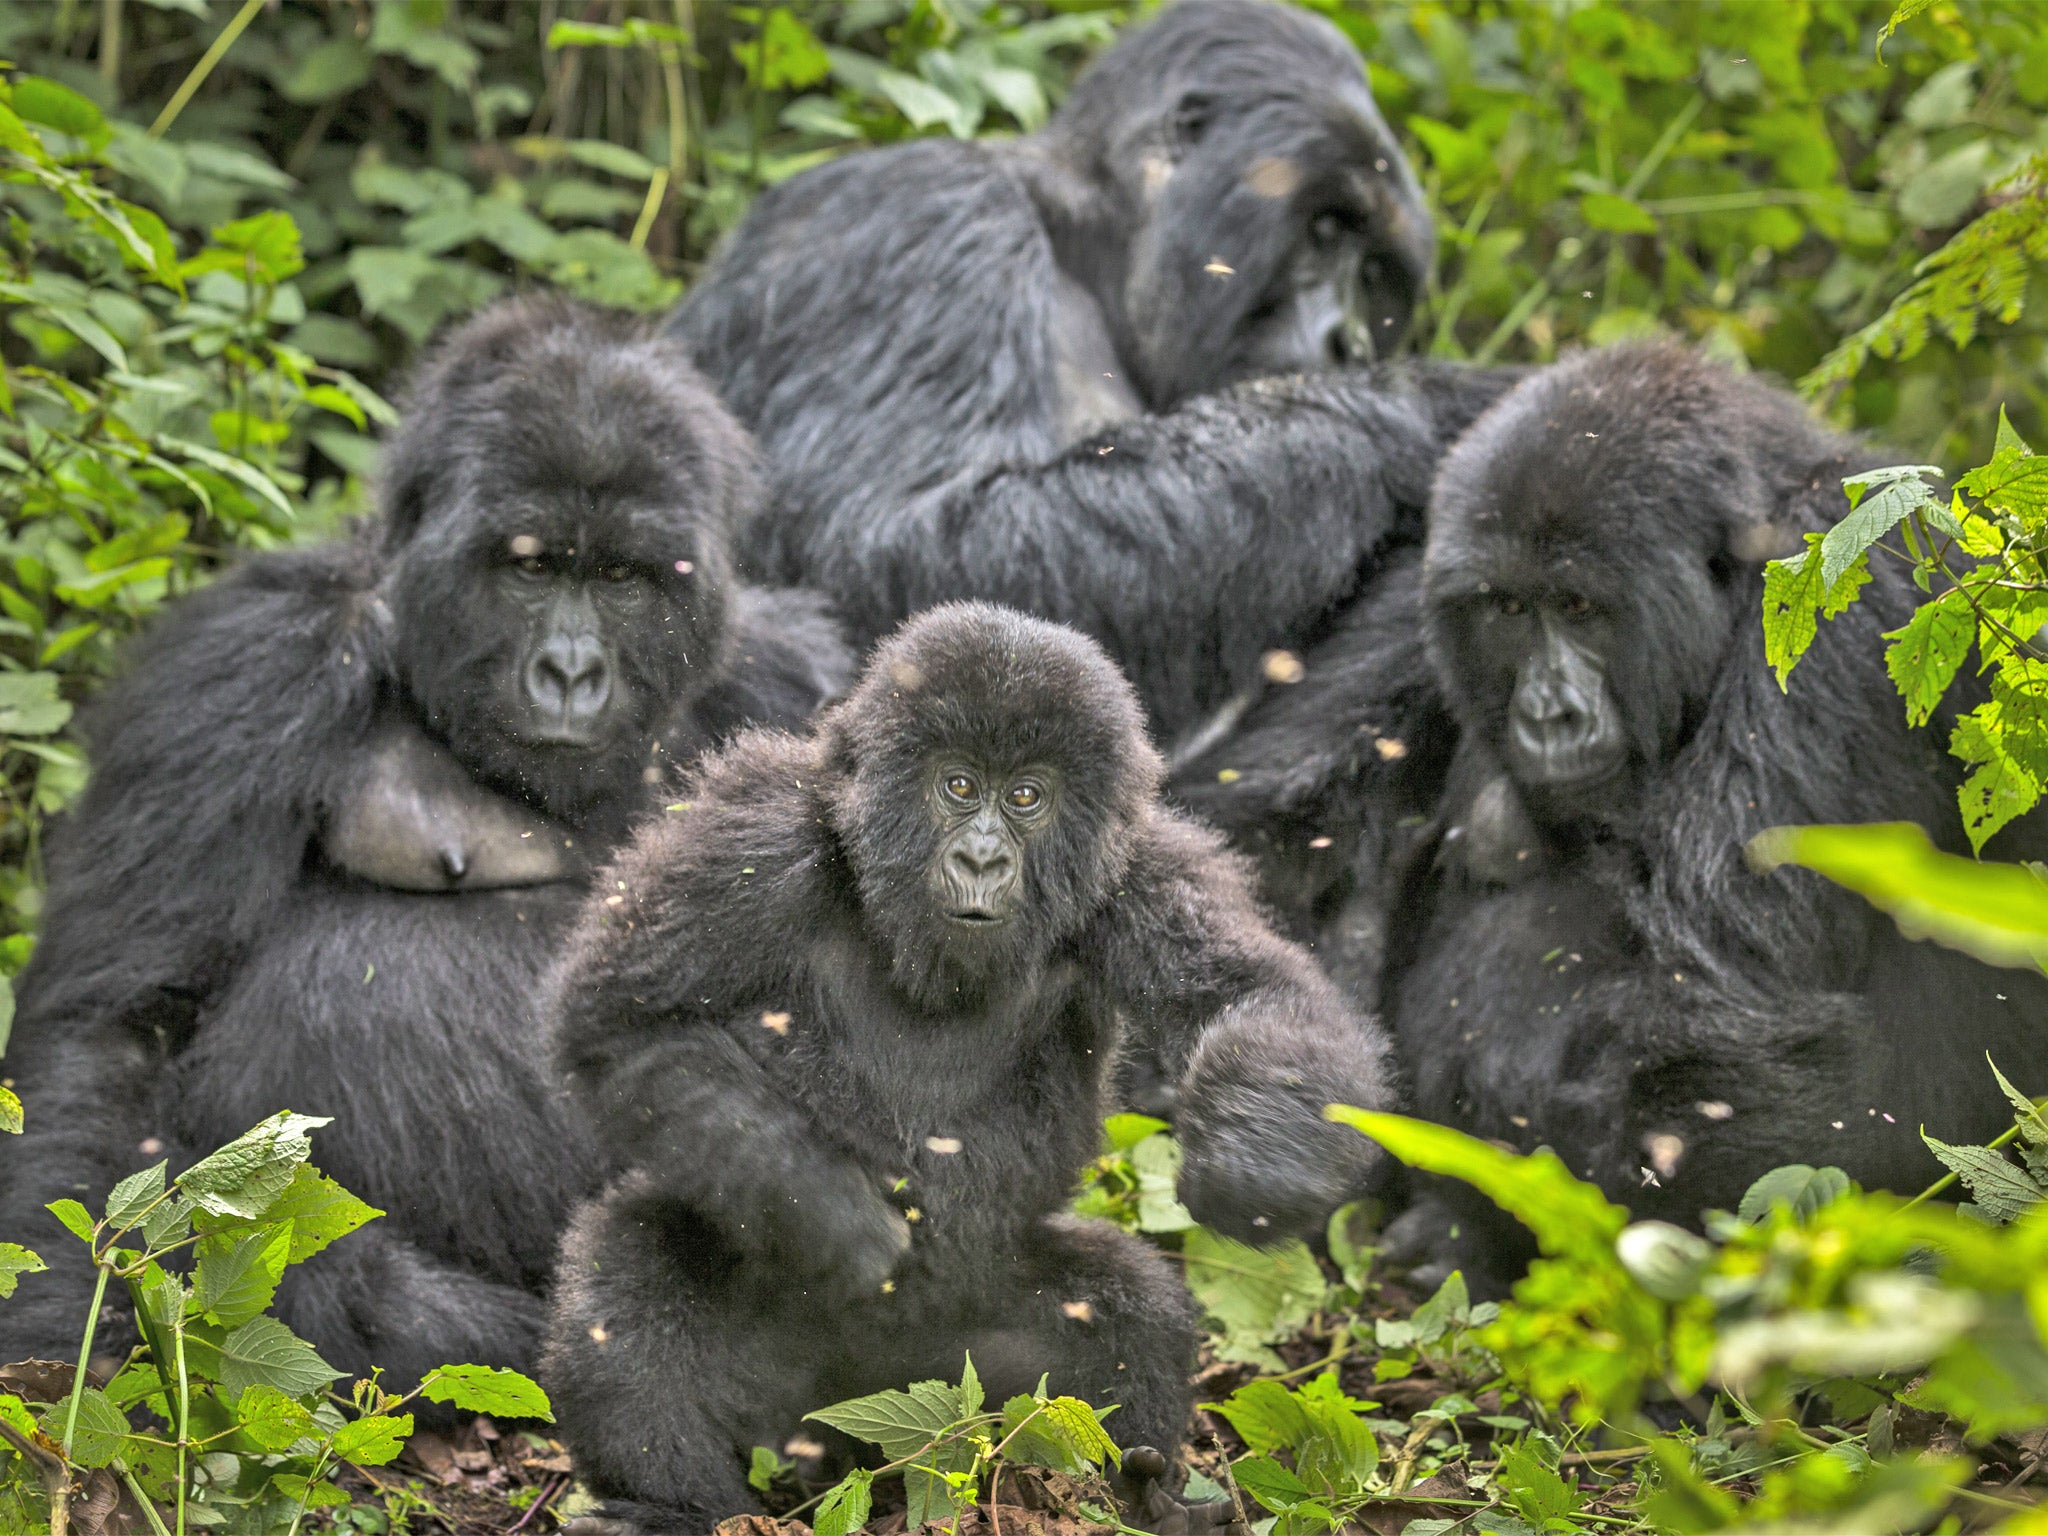 A family of Gorillas in Virunga National Park